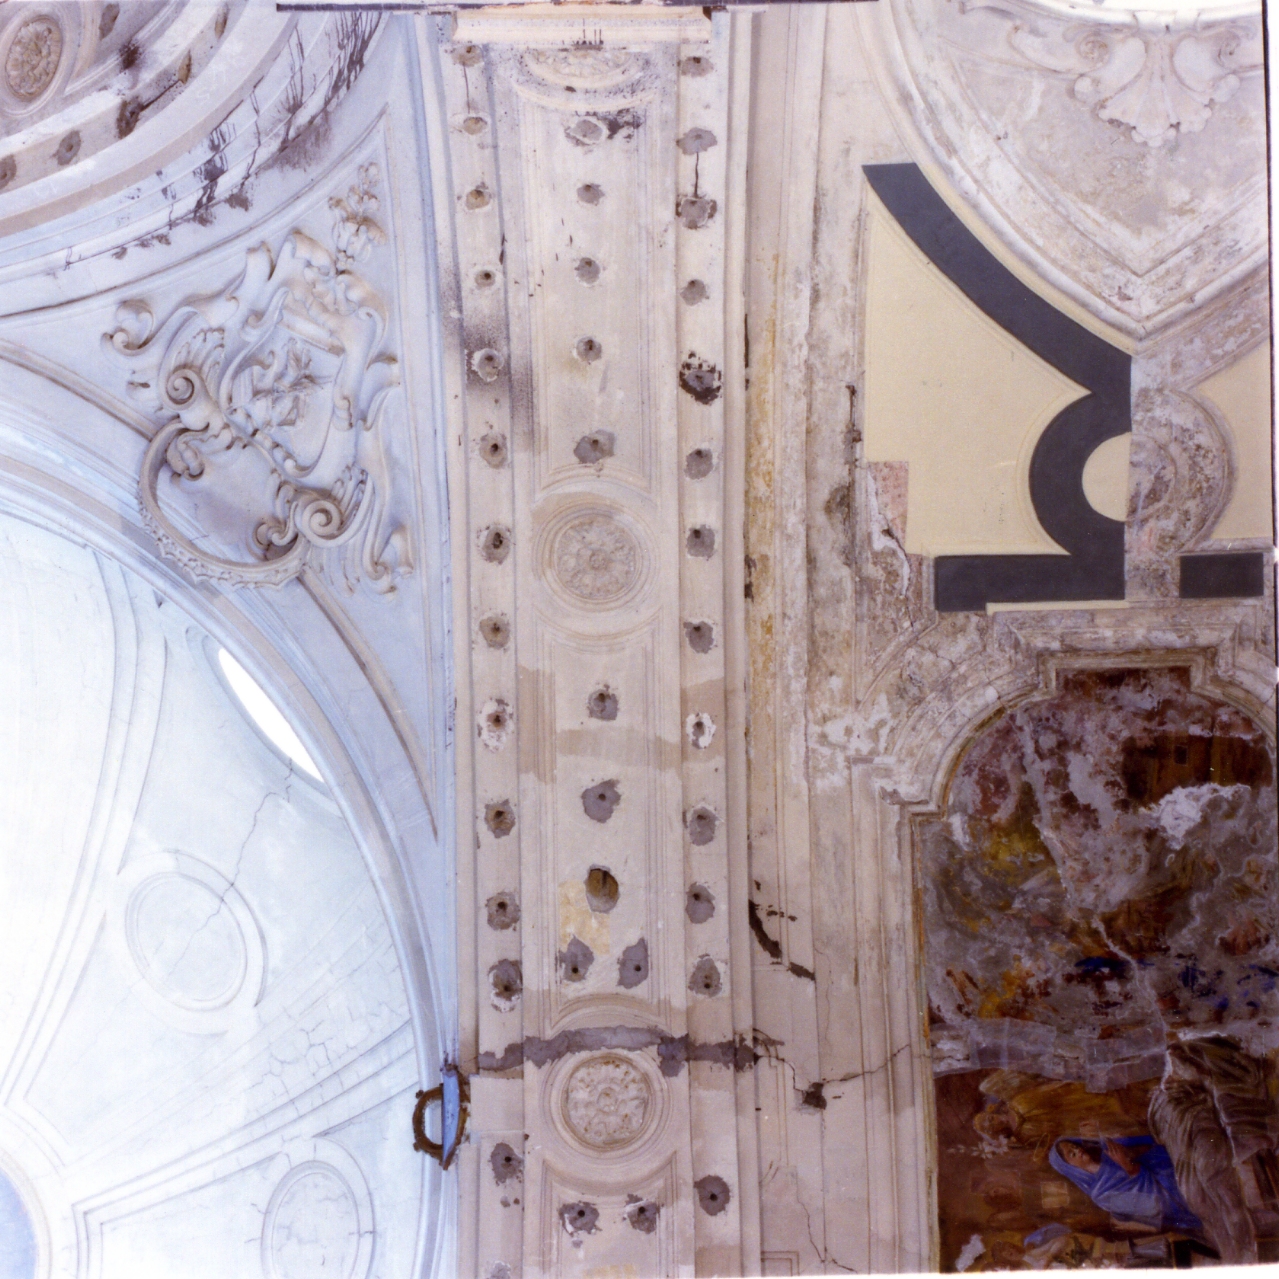 decorazione plastica, serie di Tagliacozzi Canale Nicola (sec. XVIII)